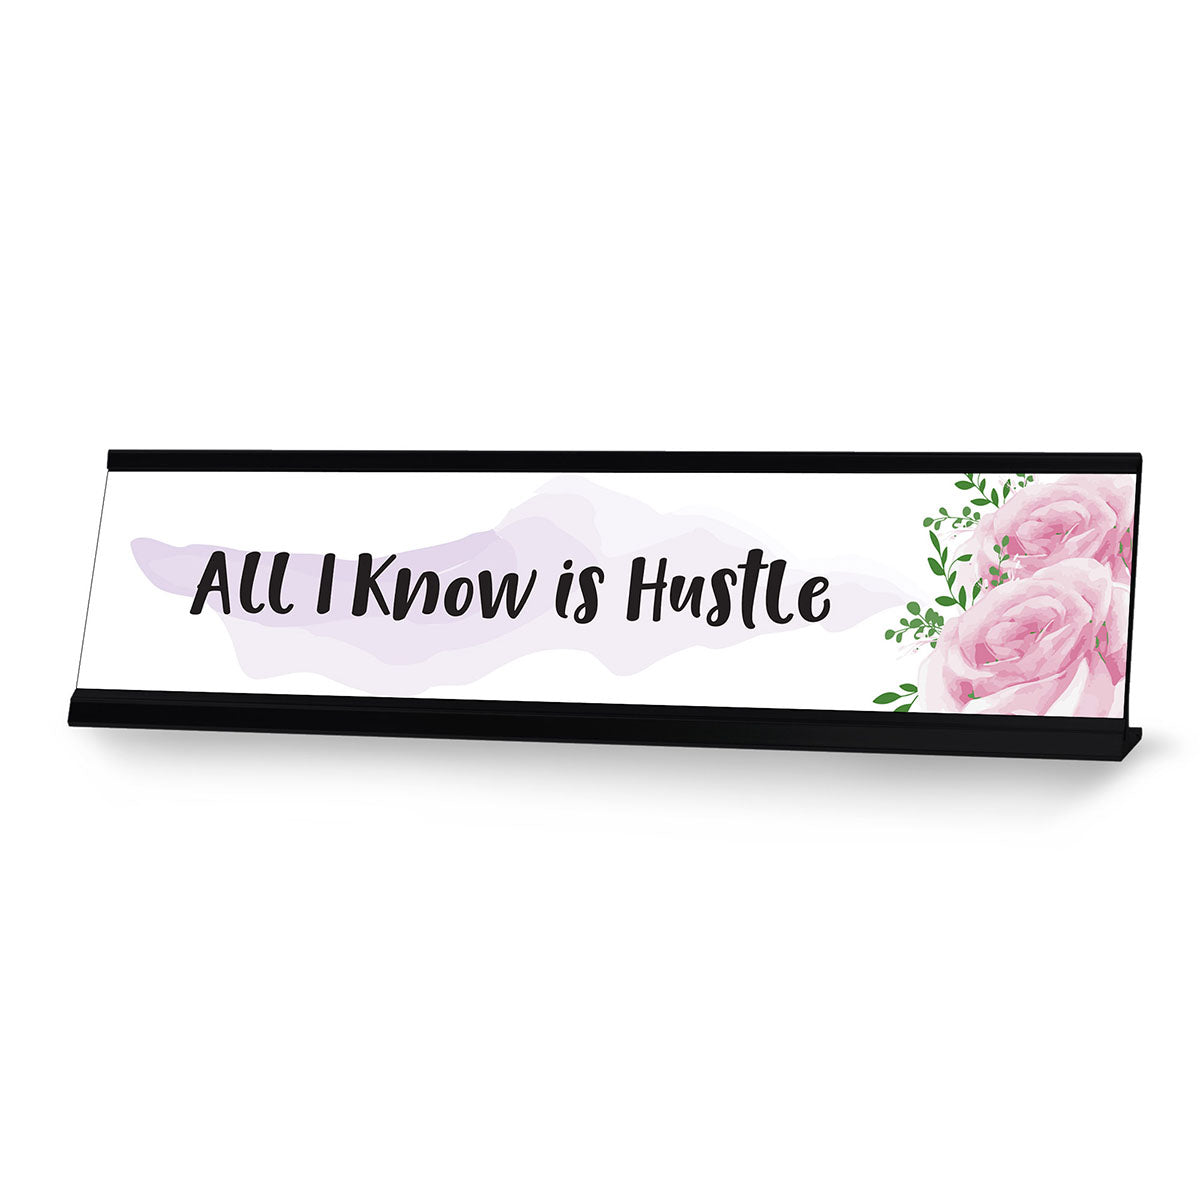 All I Know is Hustle Designer Series Desk Sign, Novelty Nameplate (2 x 8")